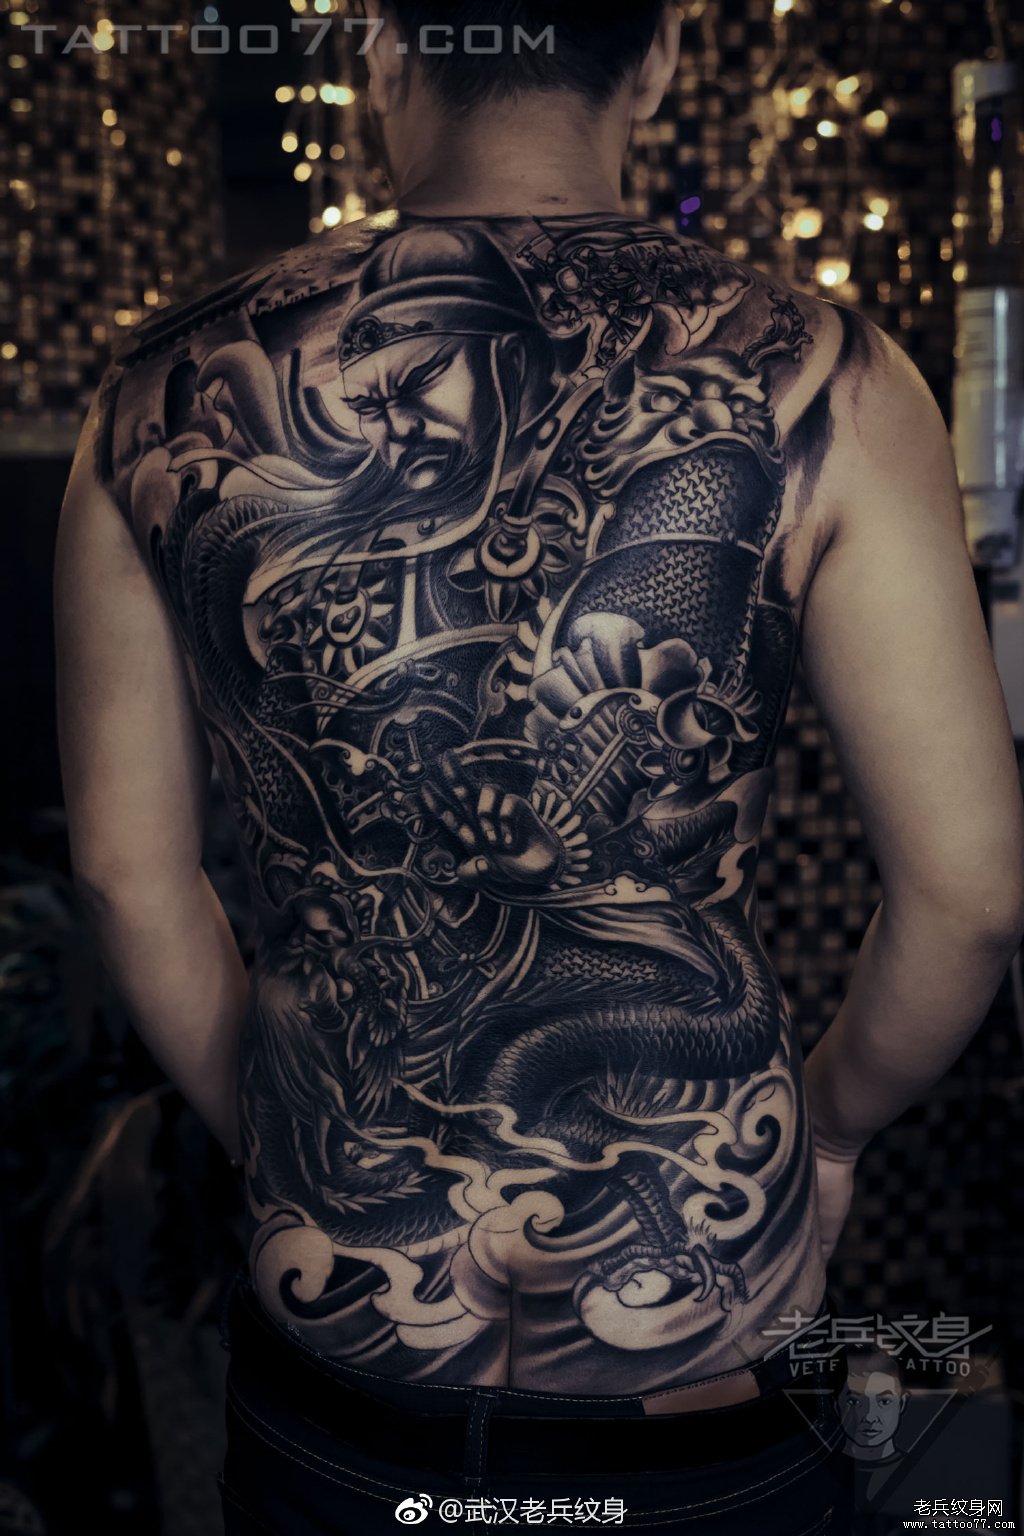 本店首席纹身师兵哥满背关羽纹身图案作品